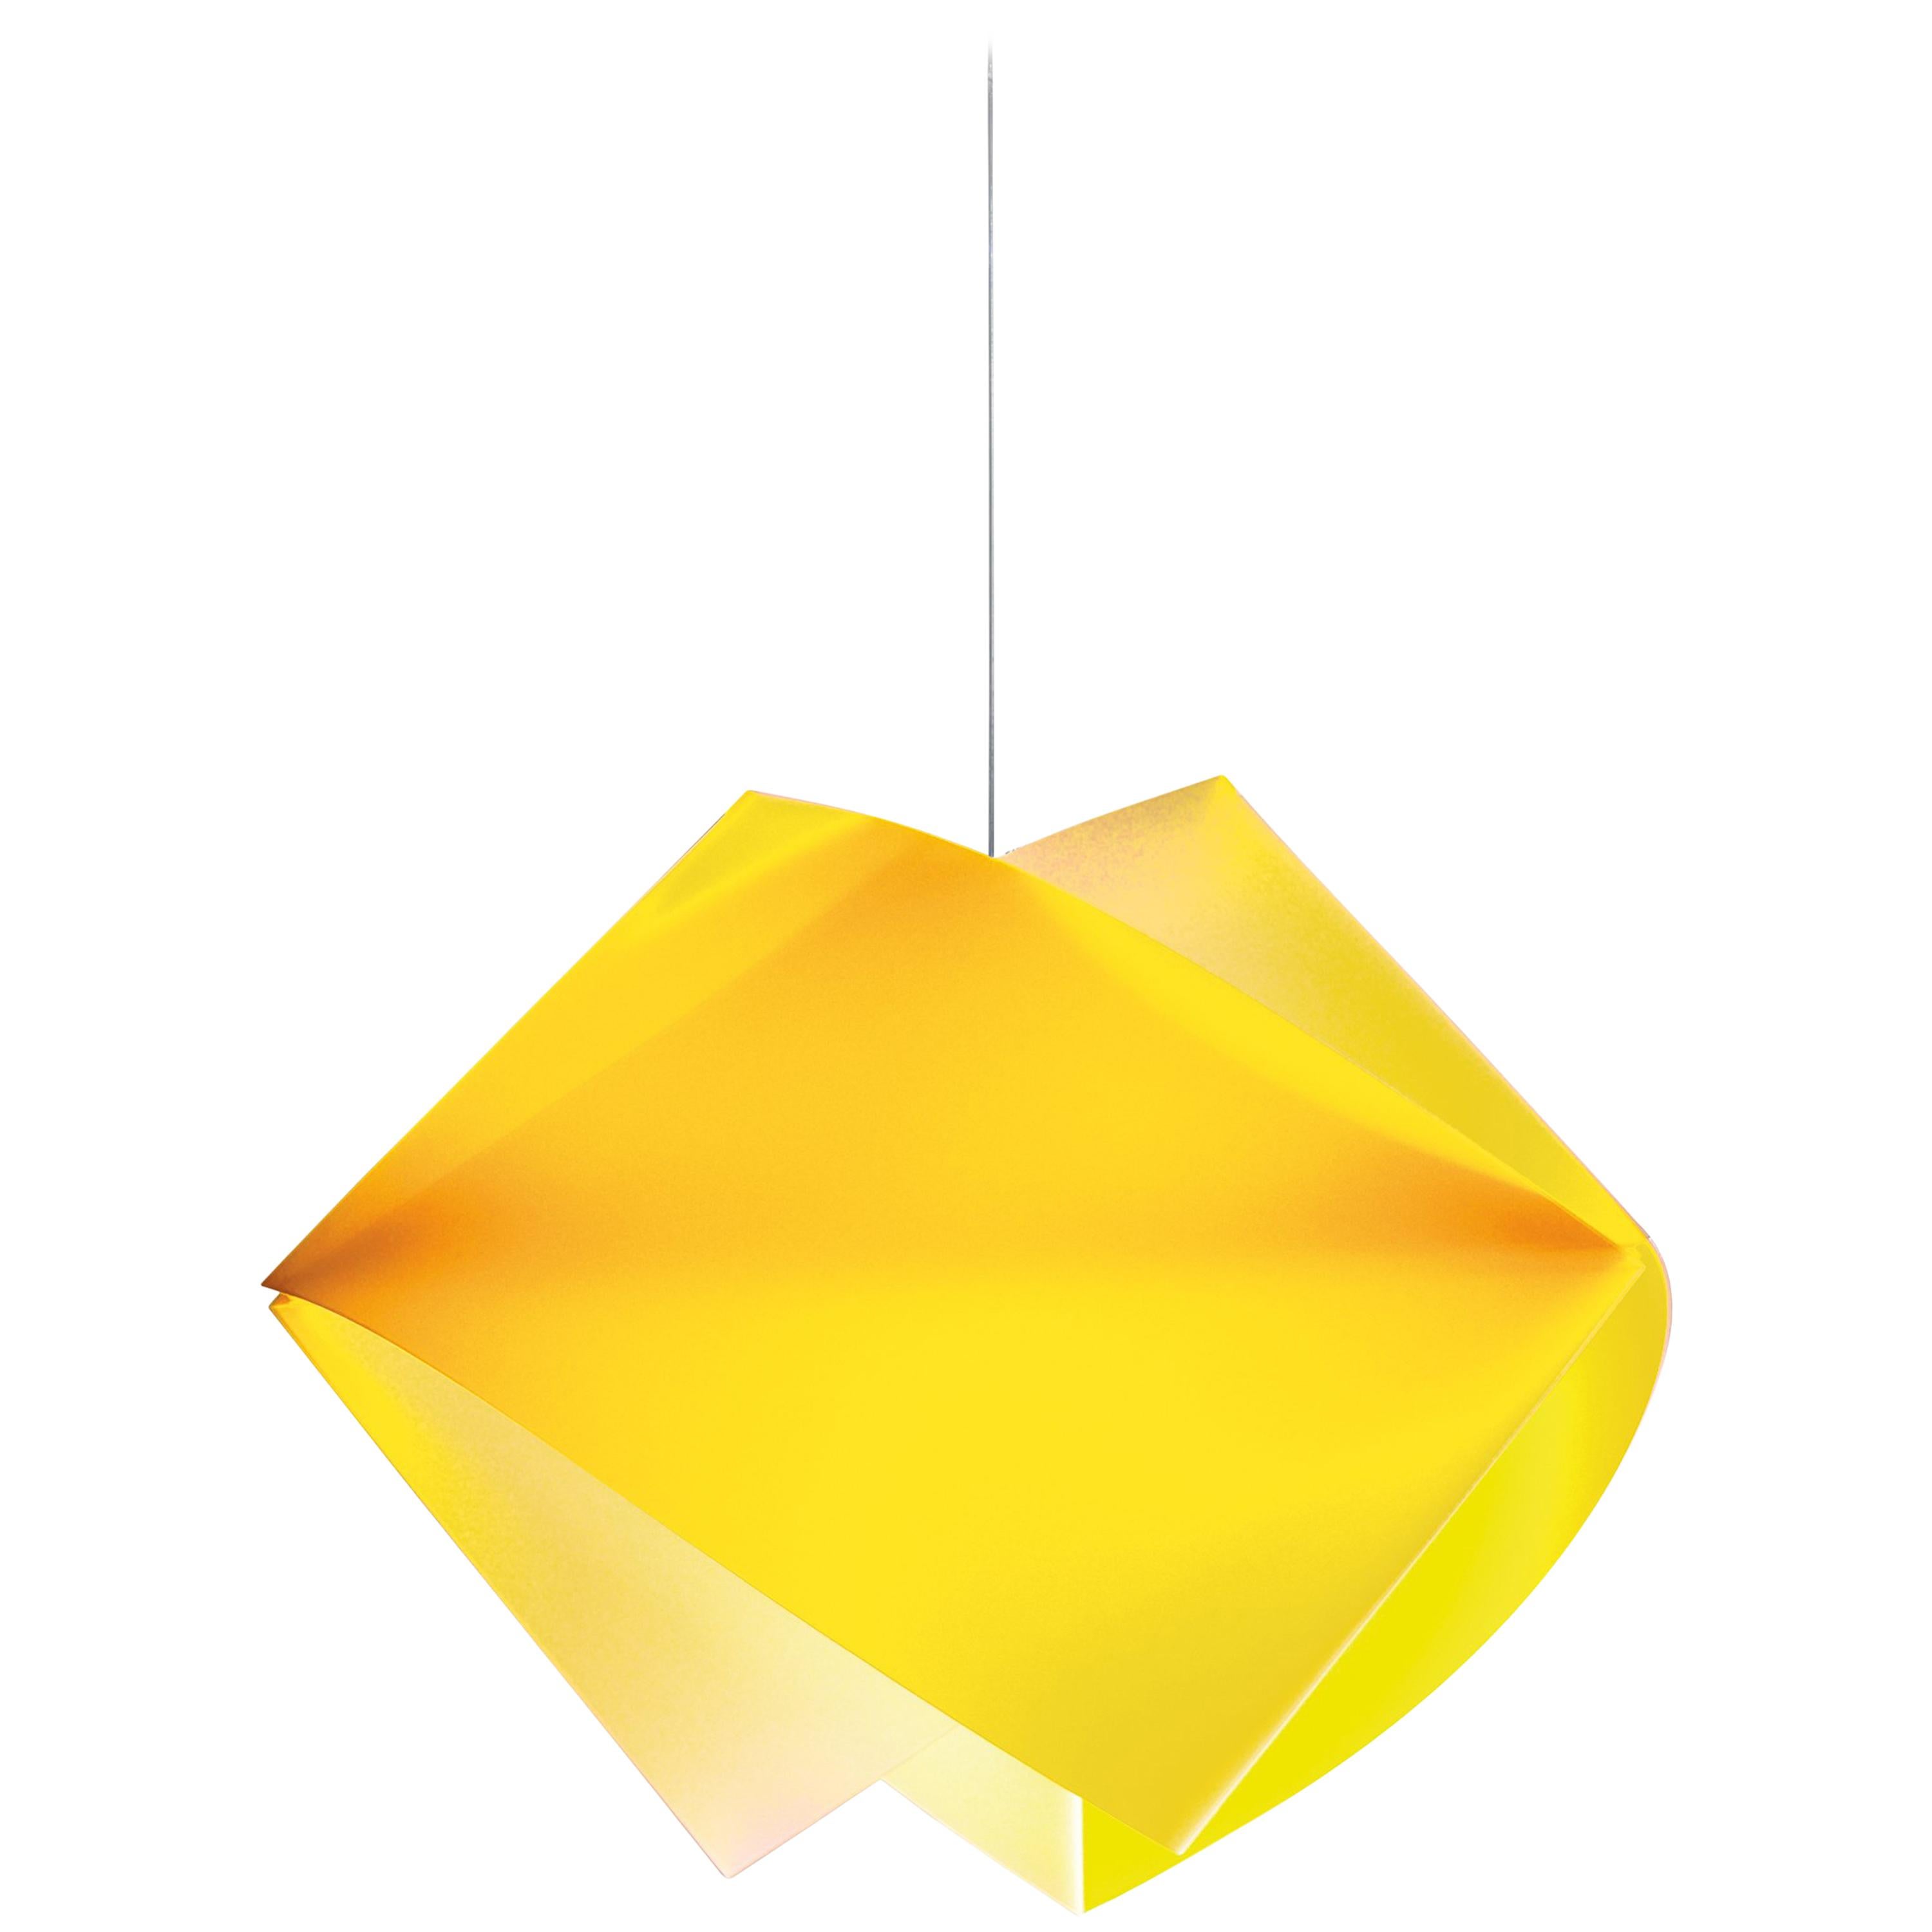 SLAMP Gemmy Pendant Light in Yellow by Spalletta, Croce, Ragnisco & Wijffels